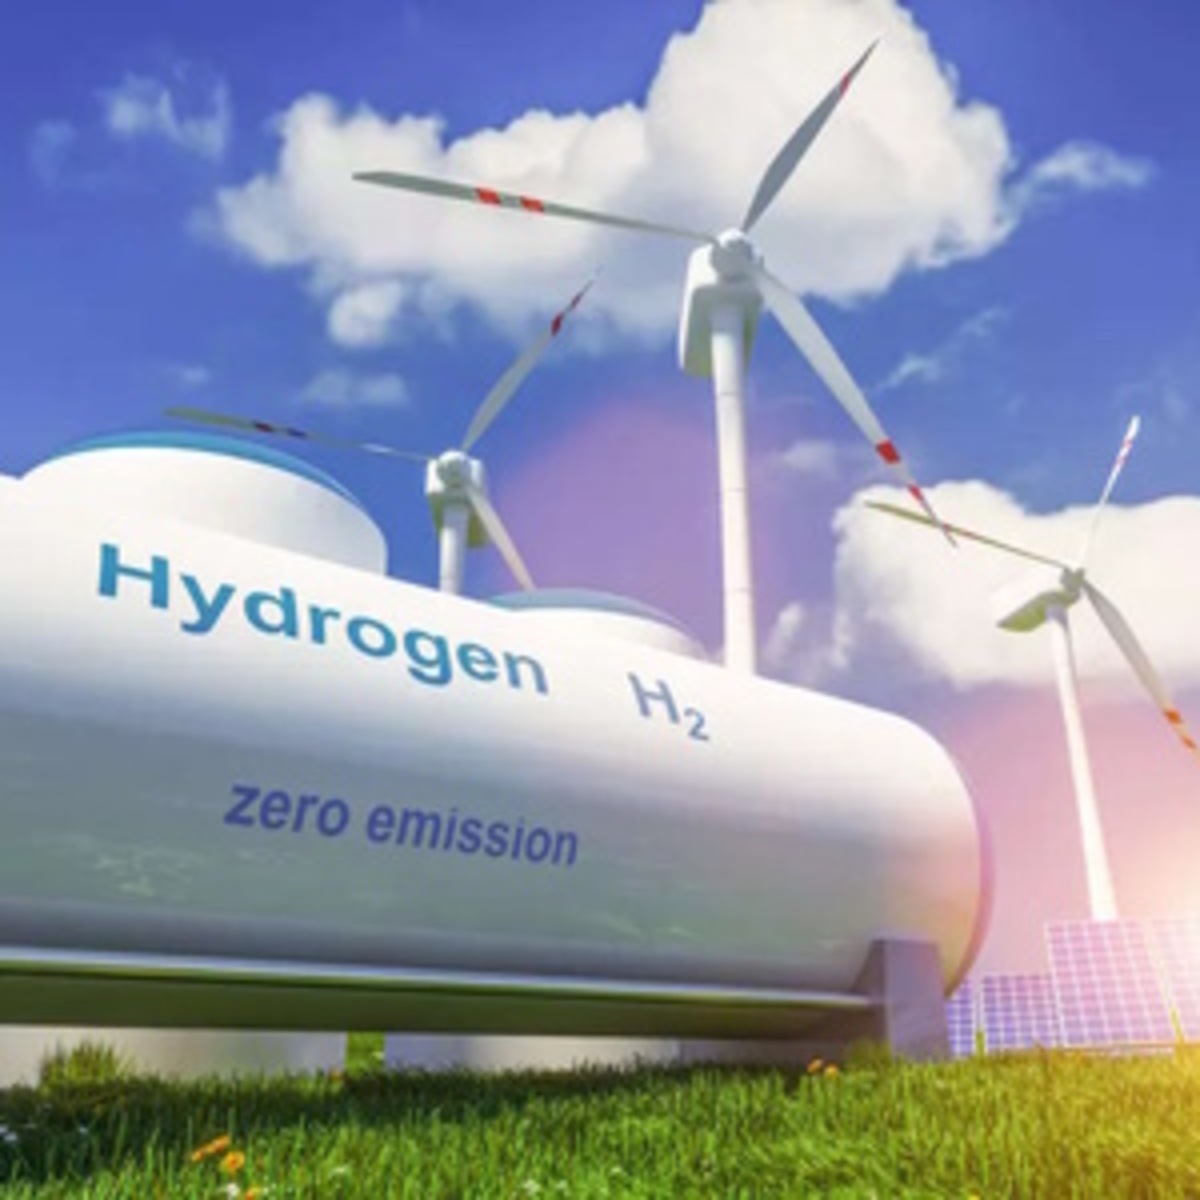 L'hydrogène, le futur!